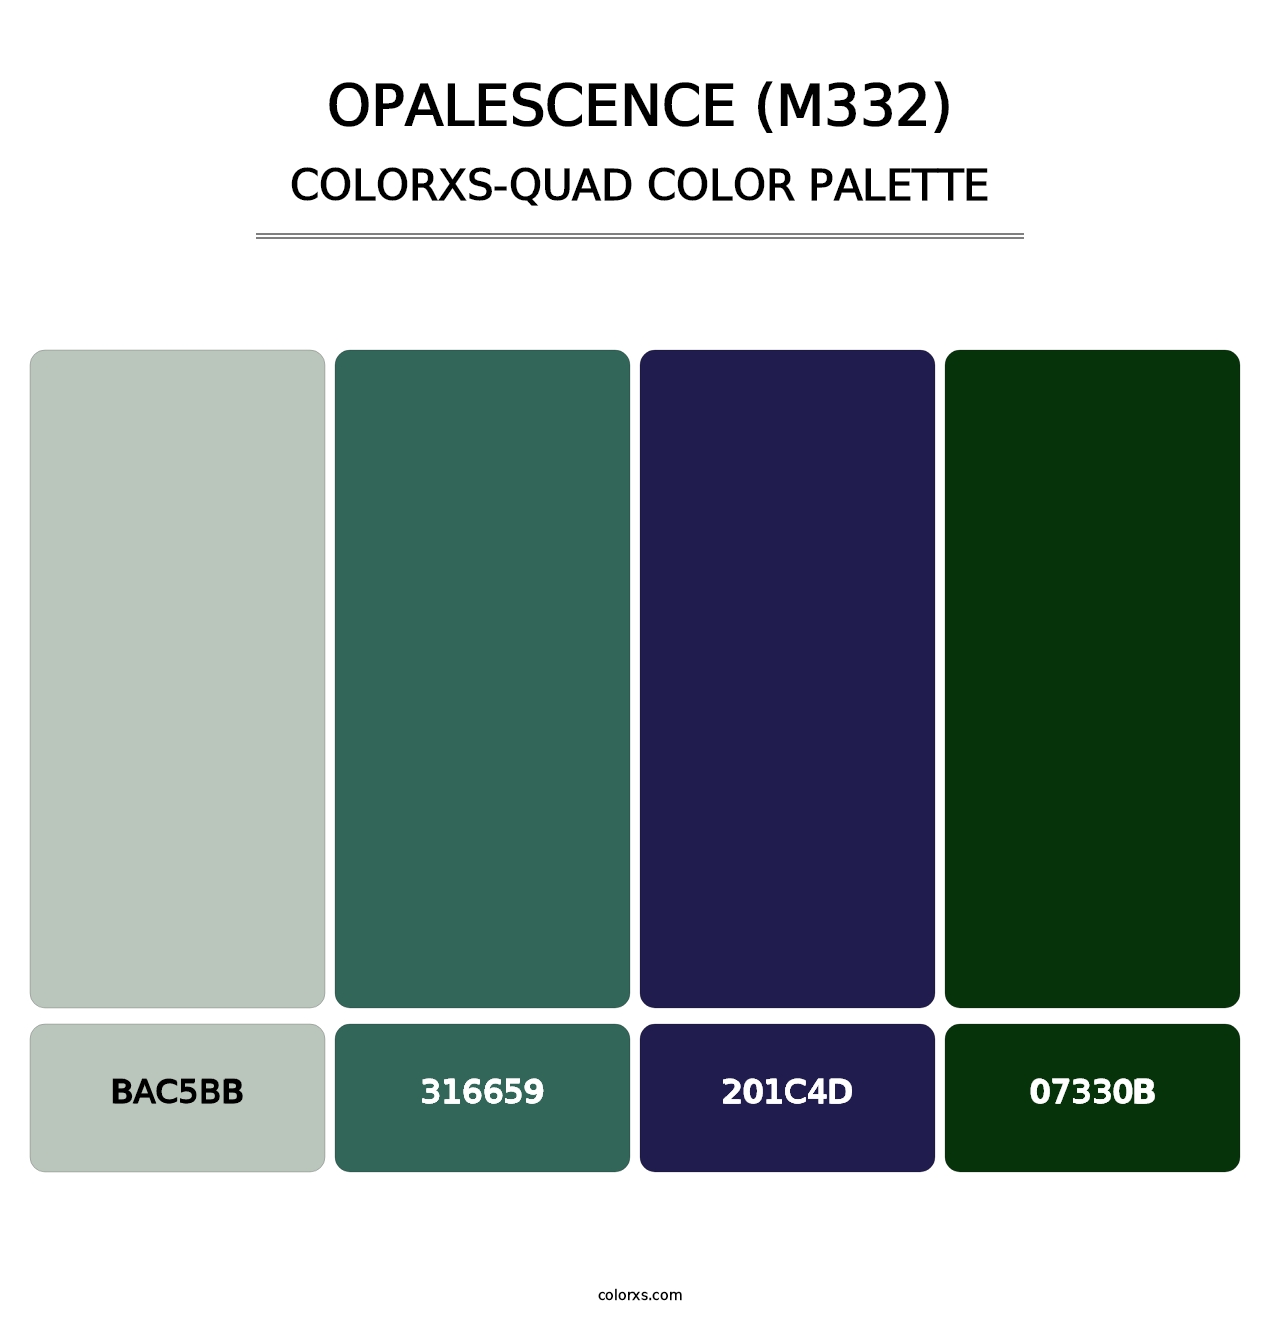 Opalescence (M332) - Colorxs Quad Palette